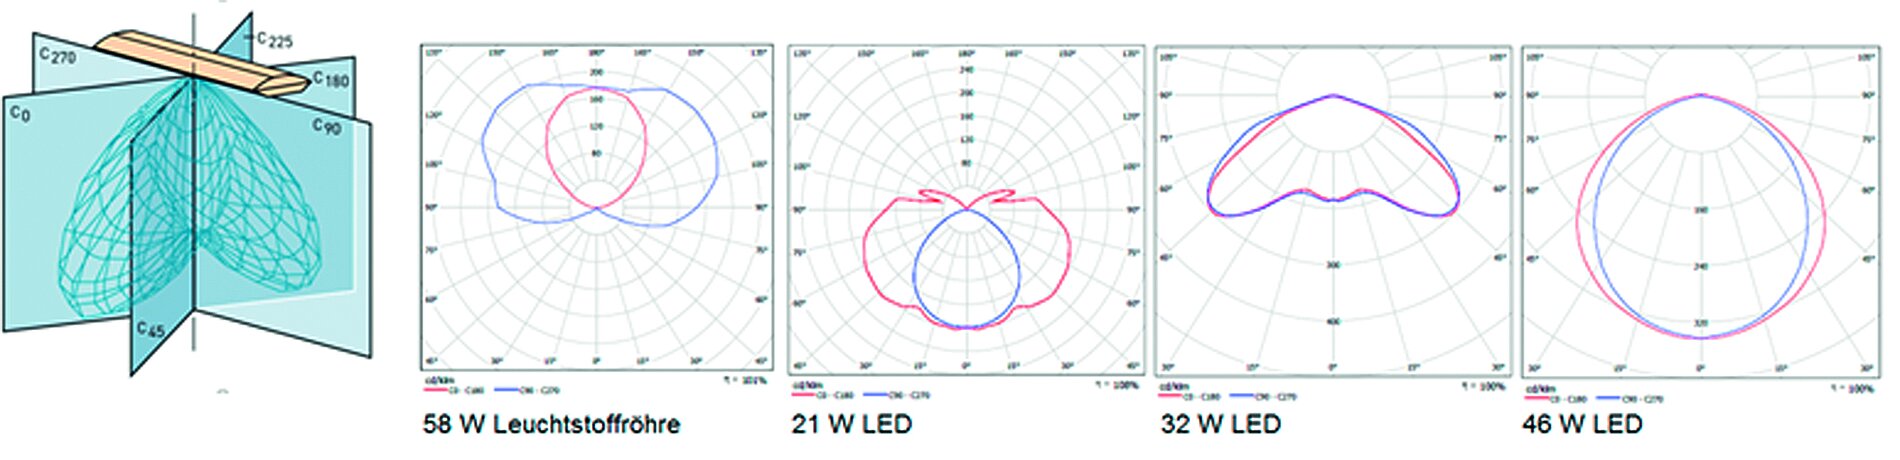 Abbildung 2: Lichtverteilungskurven verschiedener Lampen (erstellt mit DIALux, 2016)